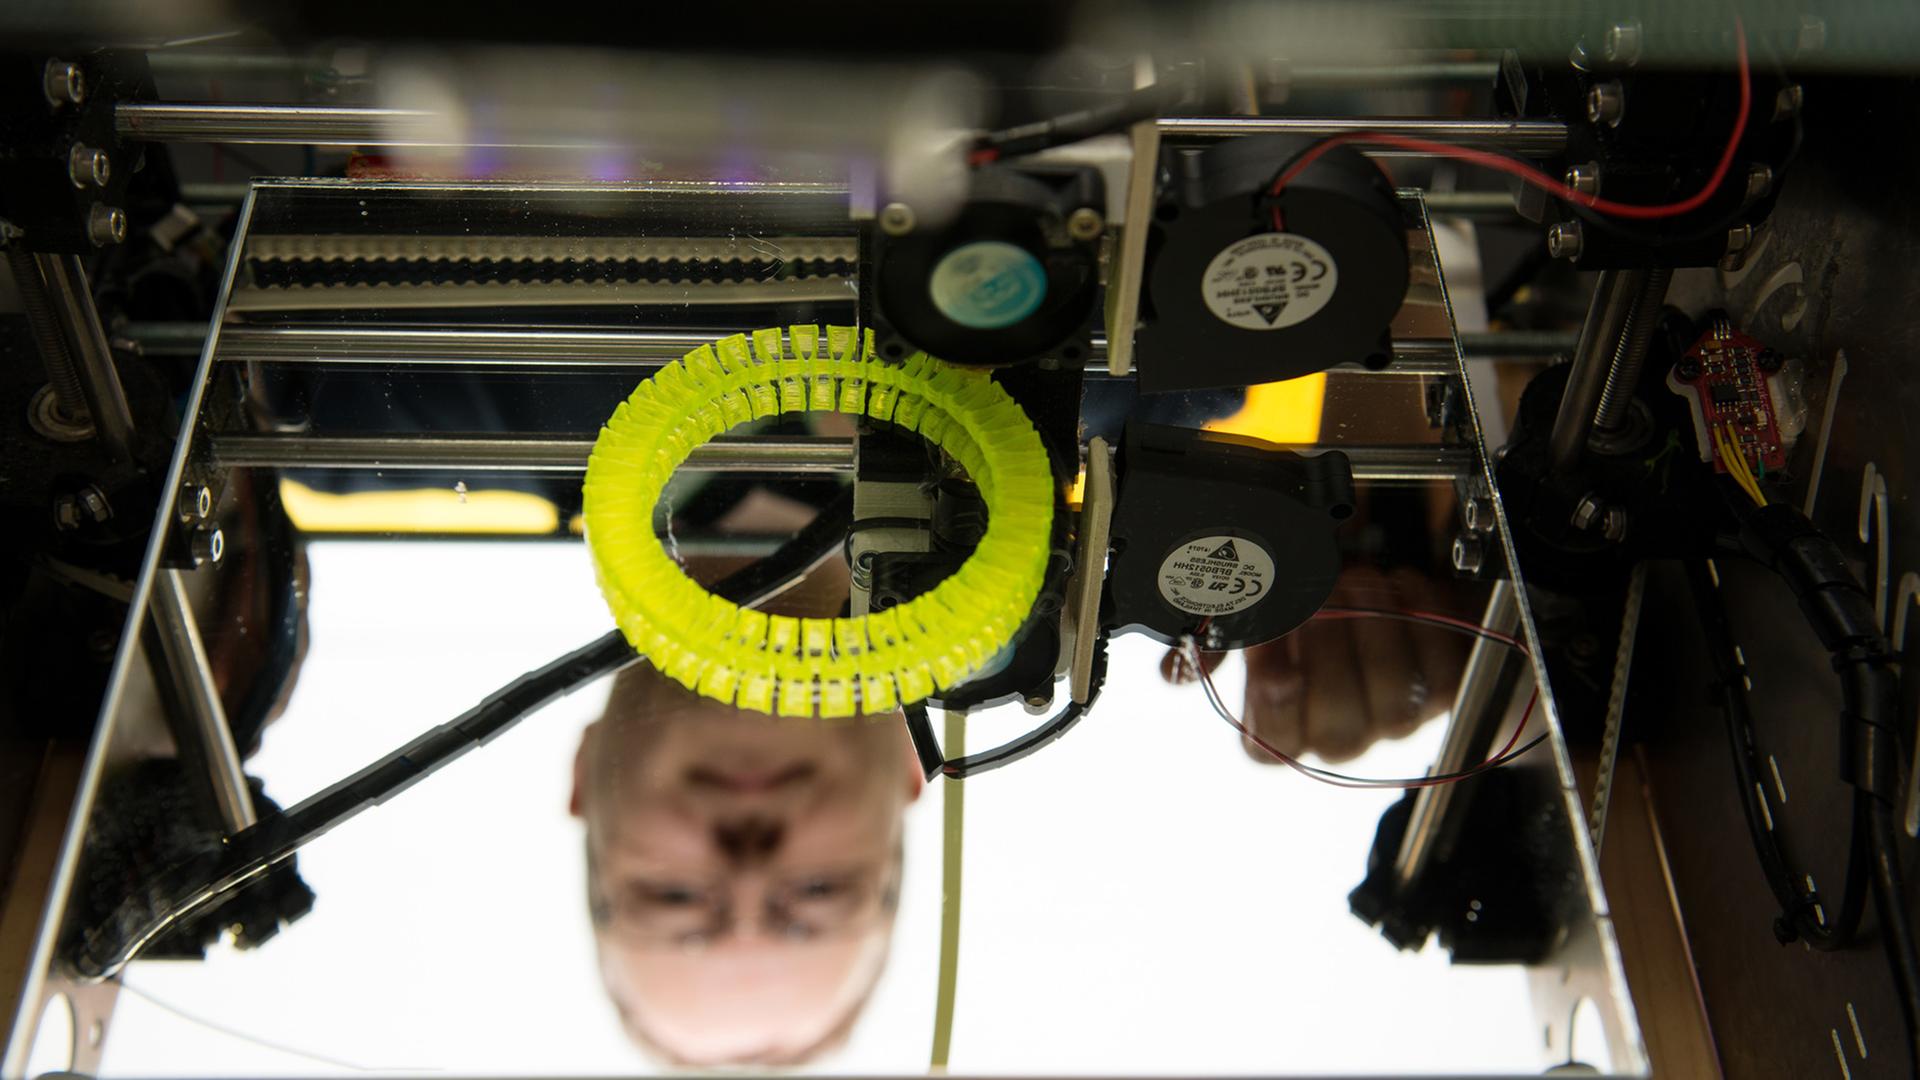 Christian Caroli von FabLab Karlsruhe steht auf der Entwicklermesse "Developer Week" in Nürnberg hinter einem 3D-Drucker, den er selbst gebaut hat.